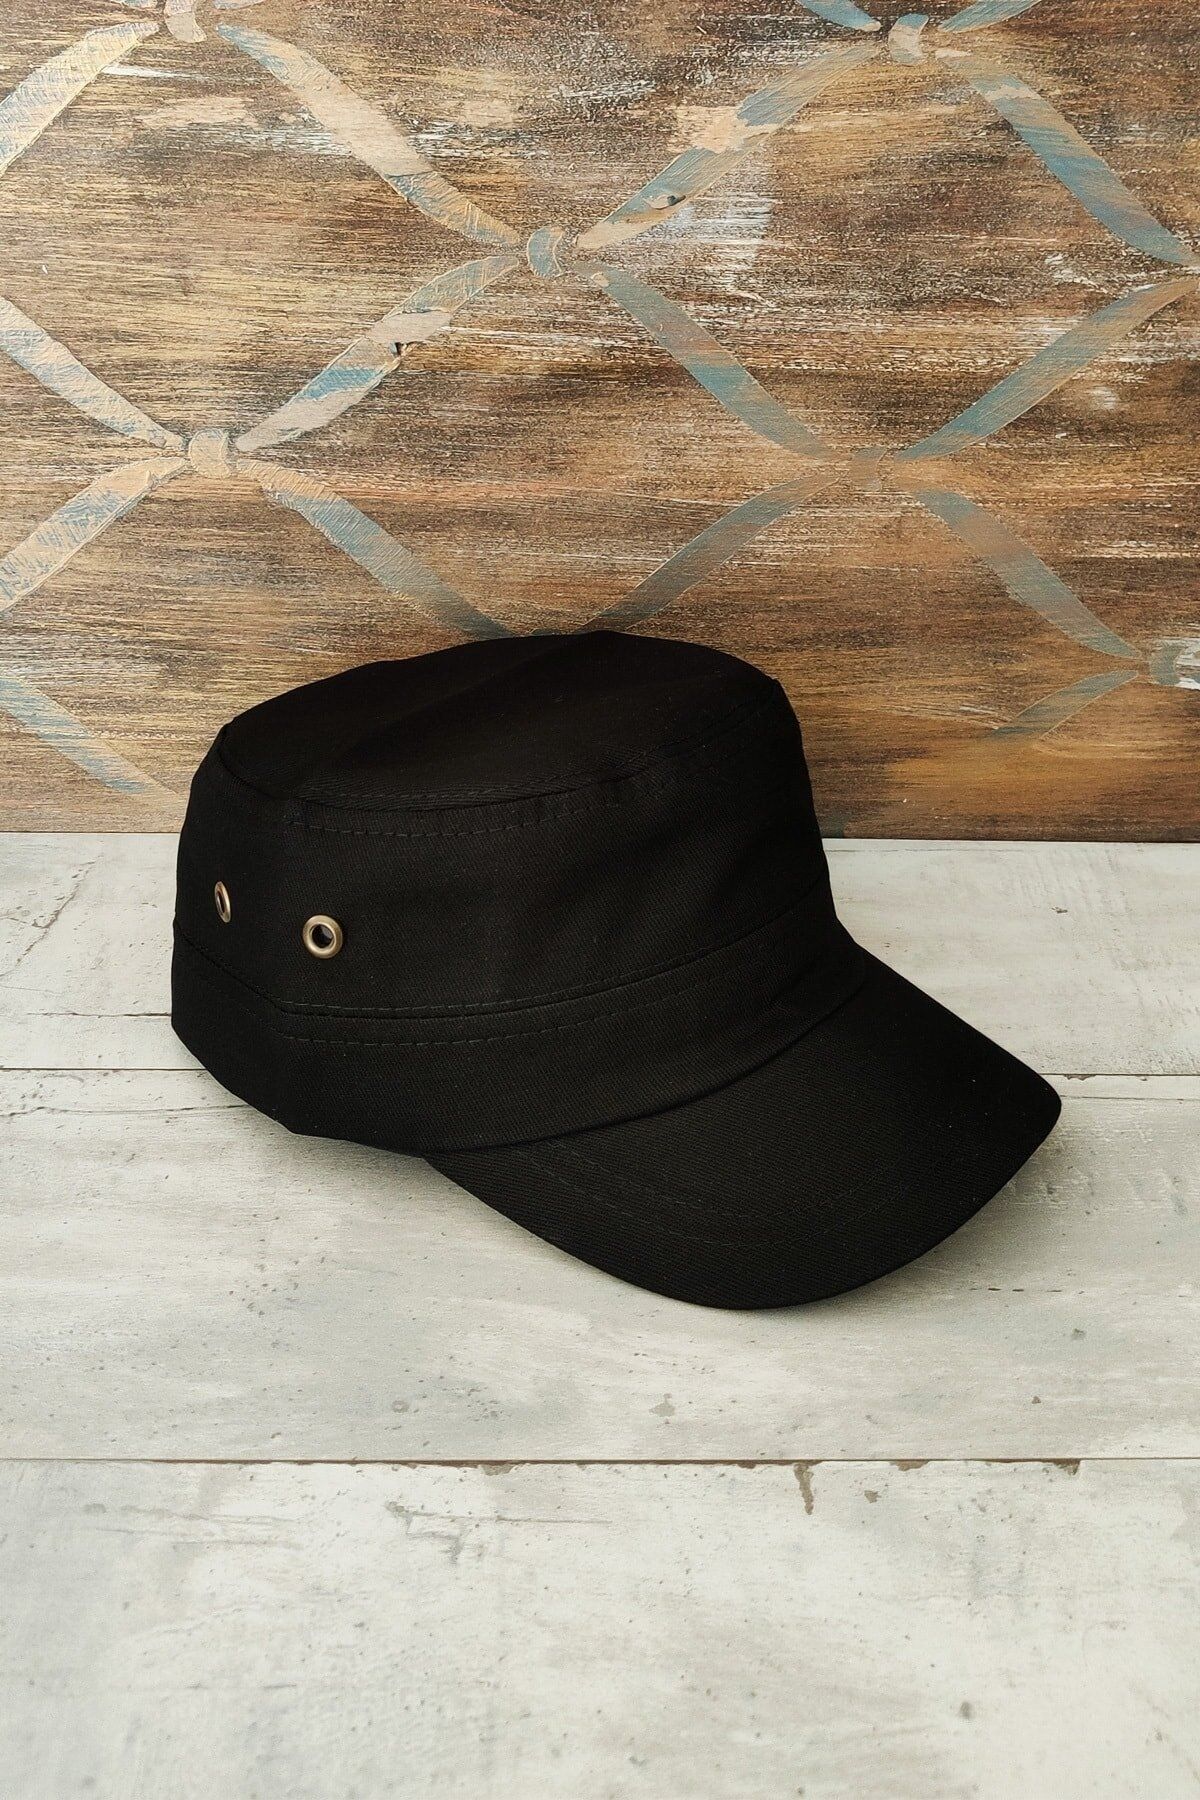 By Safari Siyah Fidel Castro Şapka, Kadın - Erkek Şapka, Avcı Şapkası